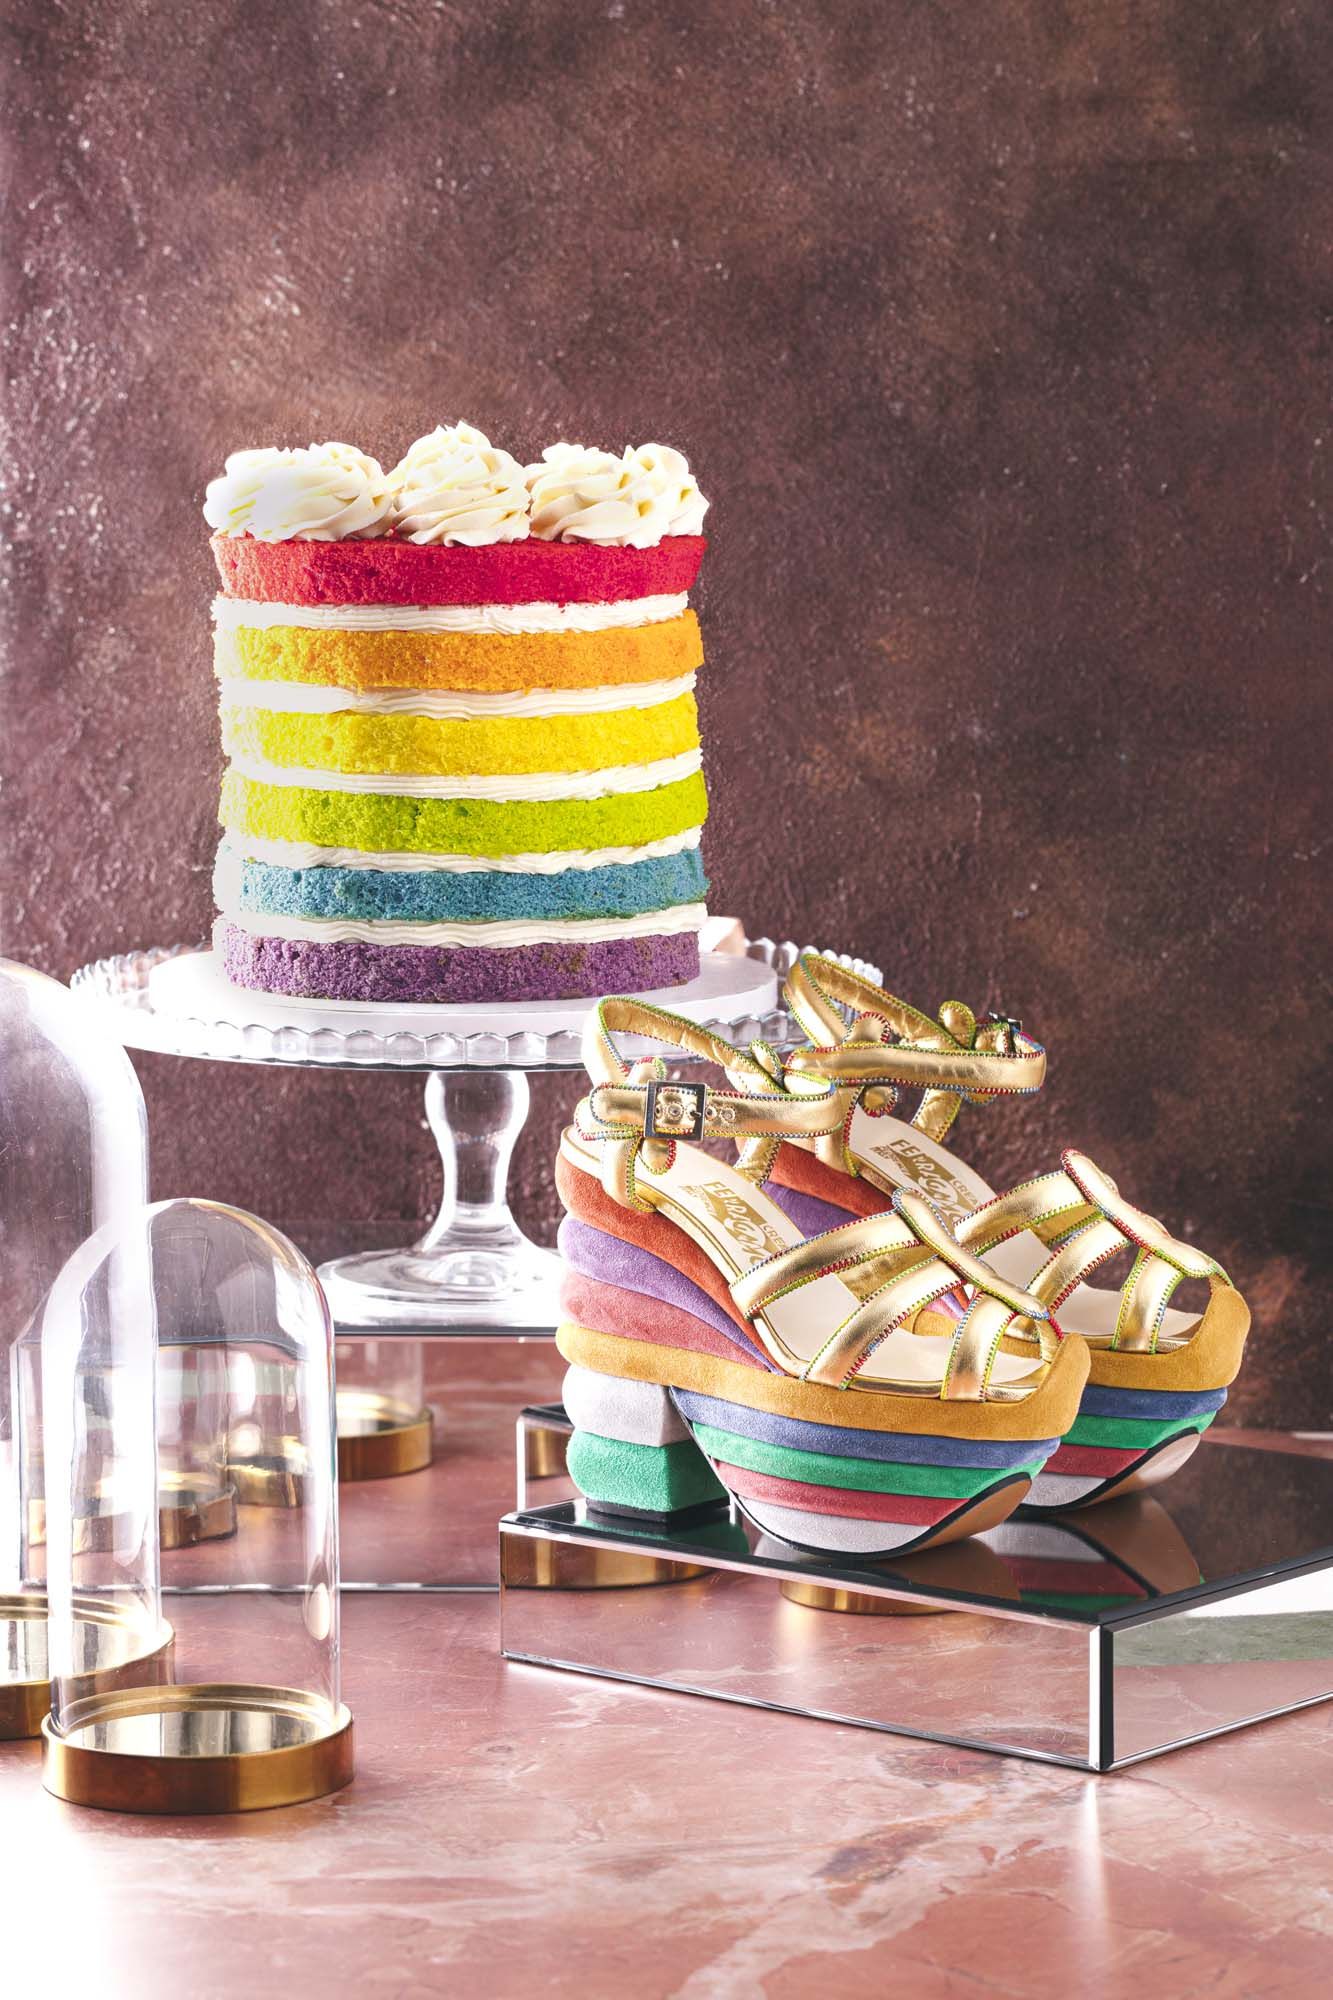 Zuccherini arcobaleno (50 g) per il compleanno del tuo bambino